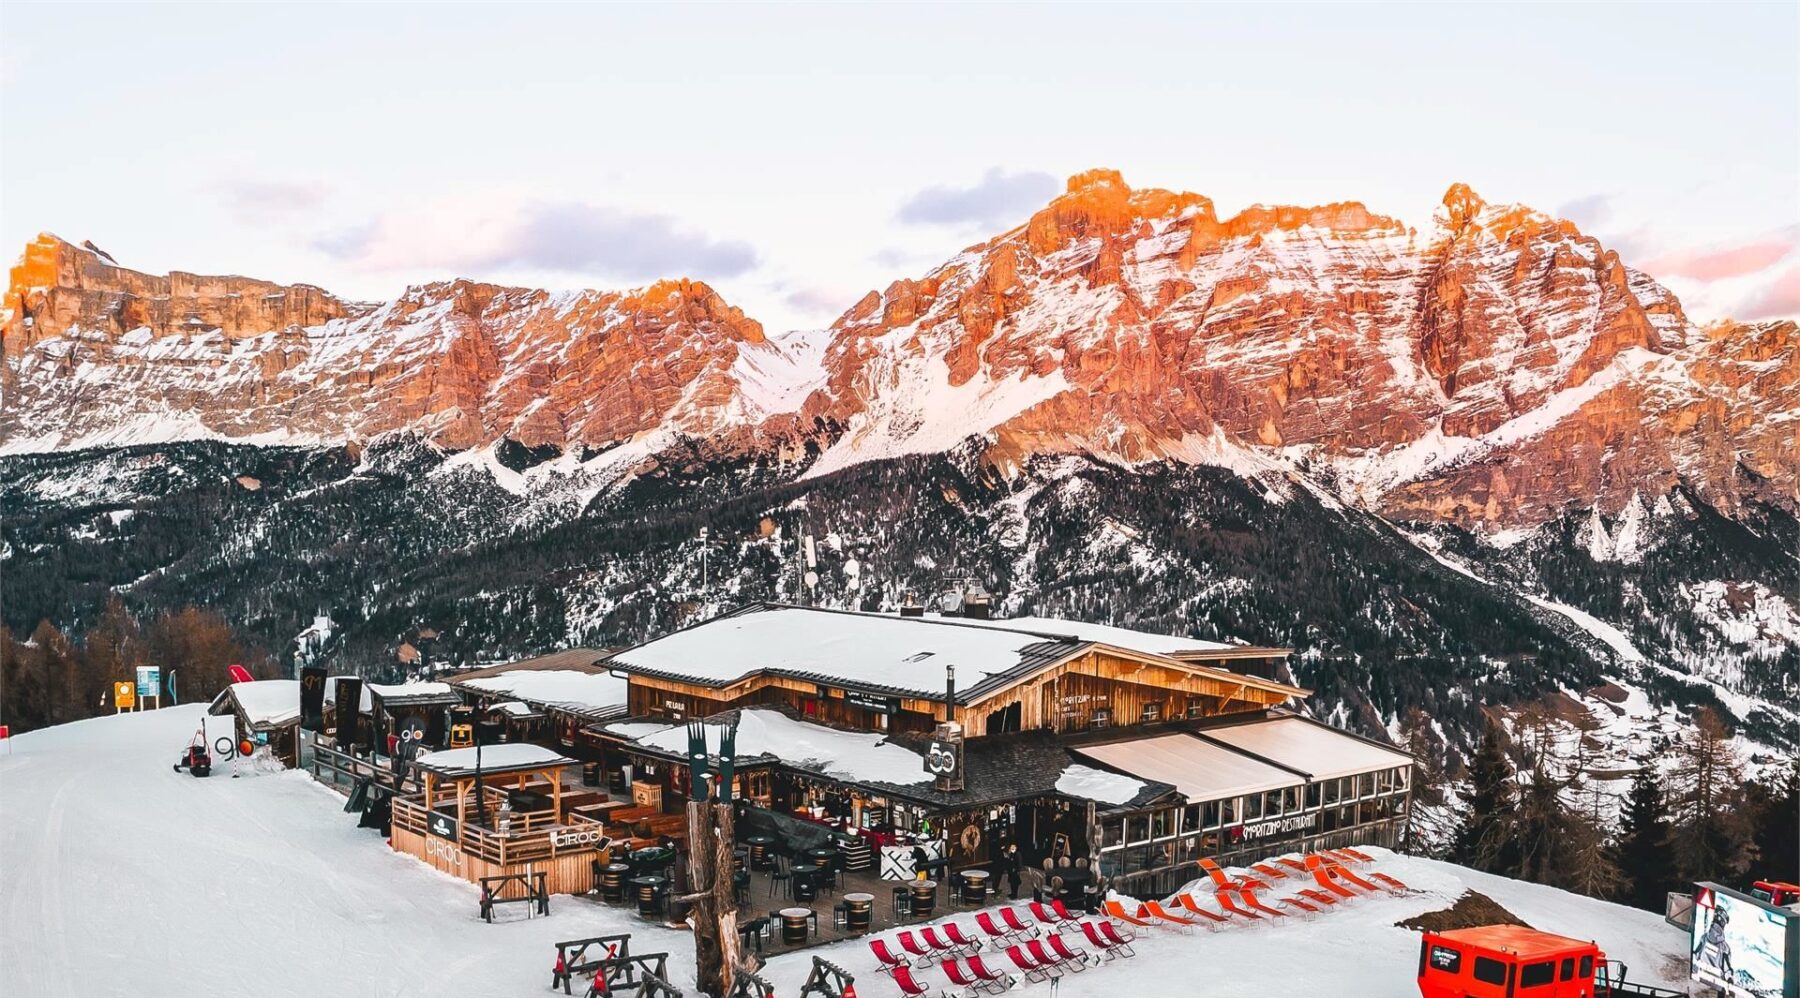 San Cassiano Ski Resort